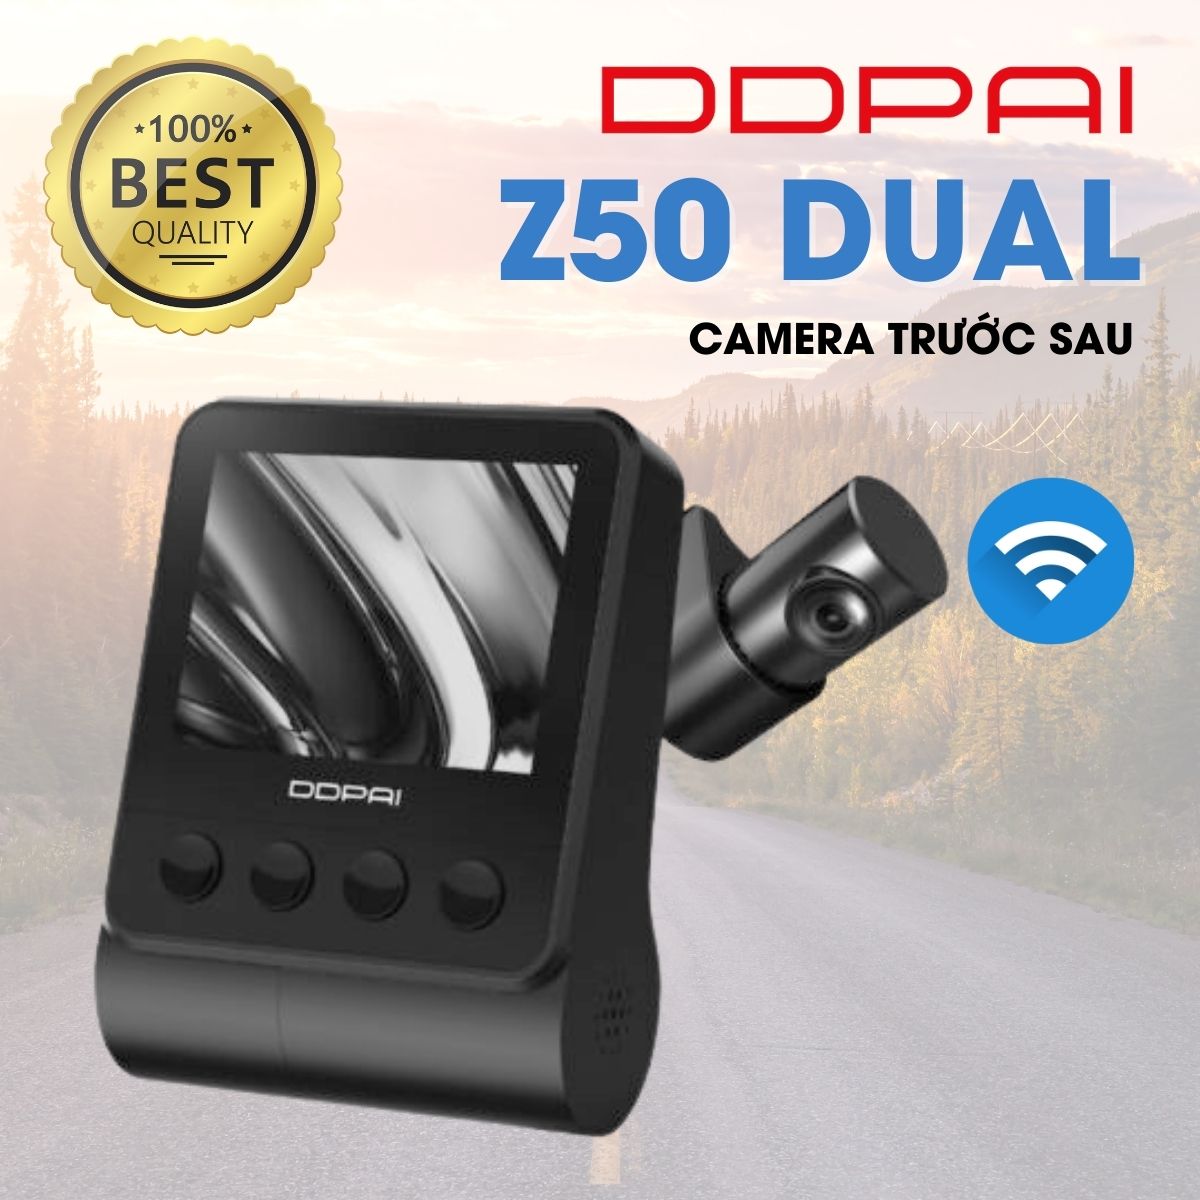 Camera hành trình DDPai Z50 4K GPS Dual, màn hình 2,3inch, Giám sát bãi đậu xe 24h